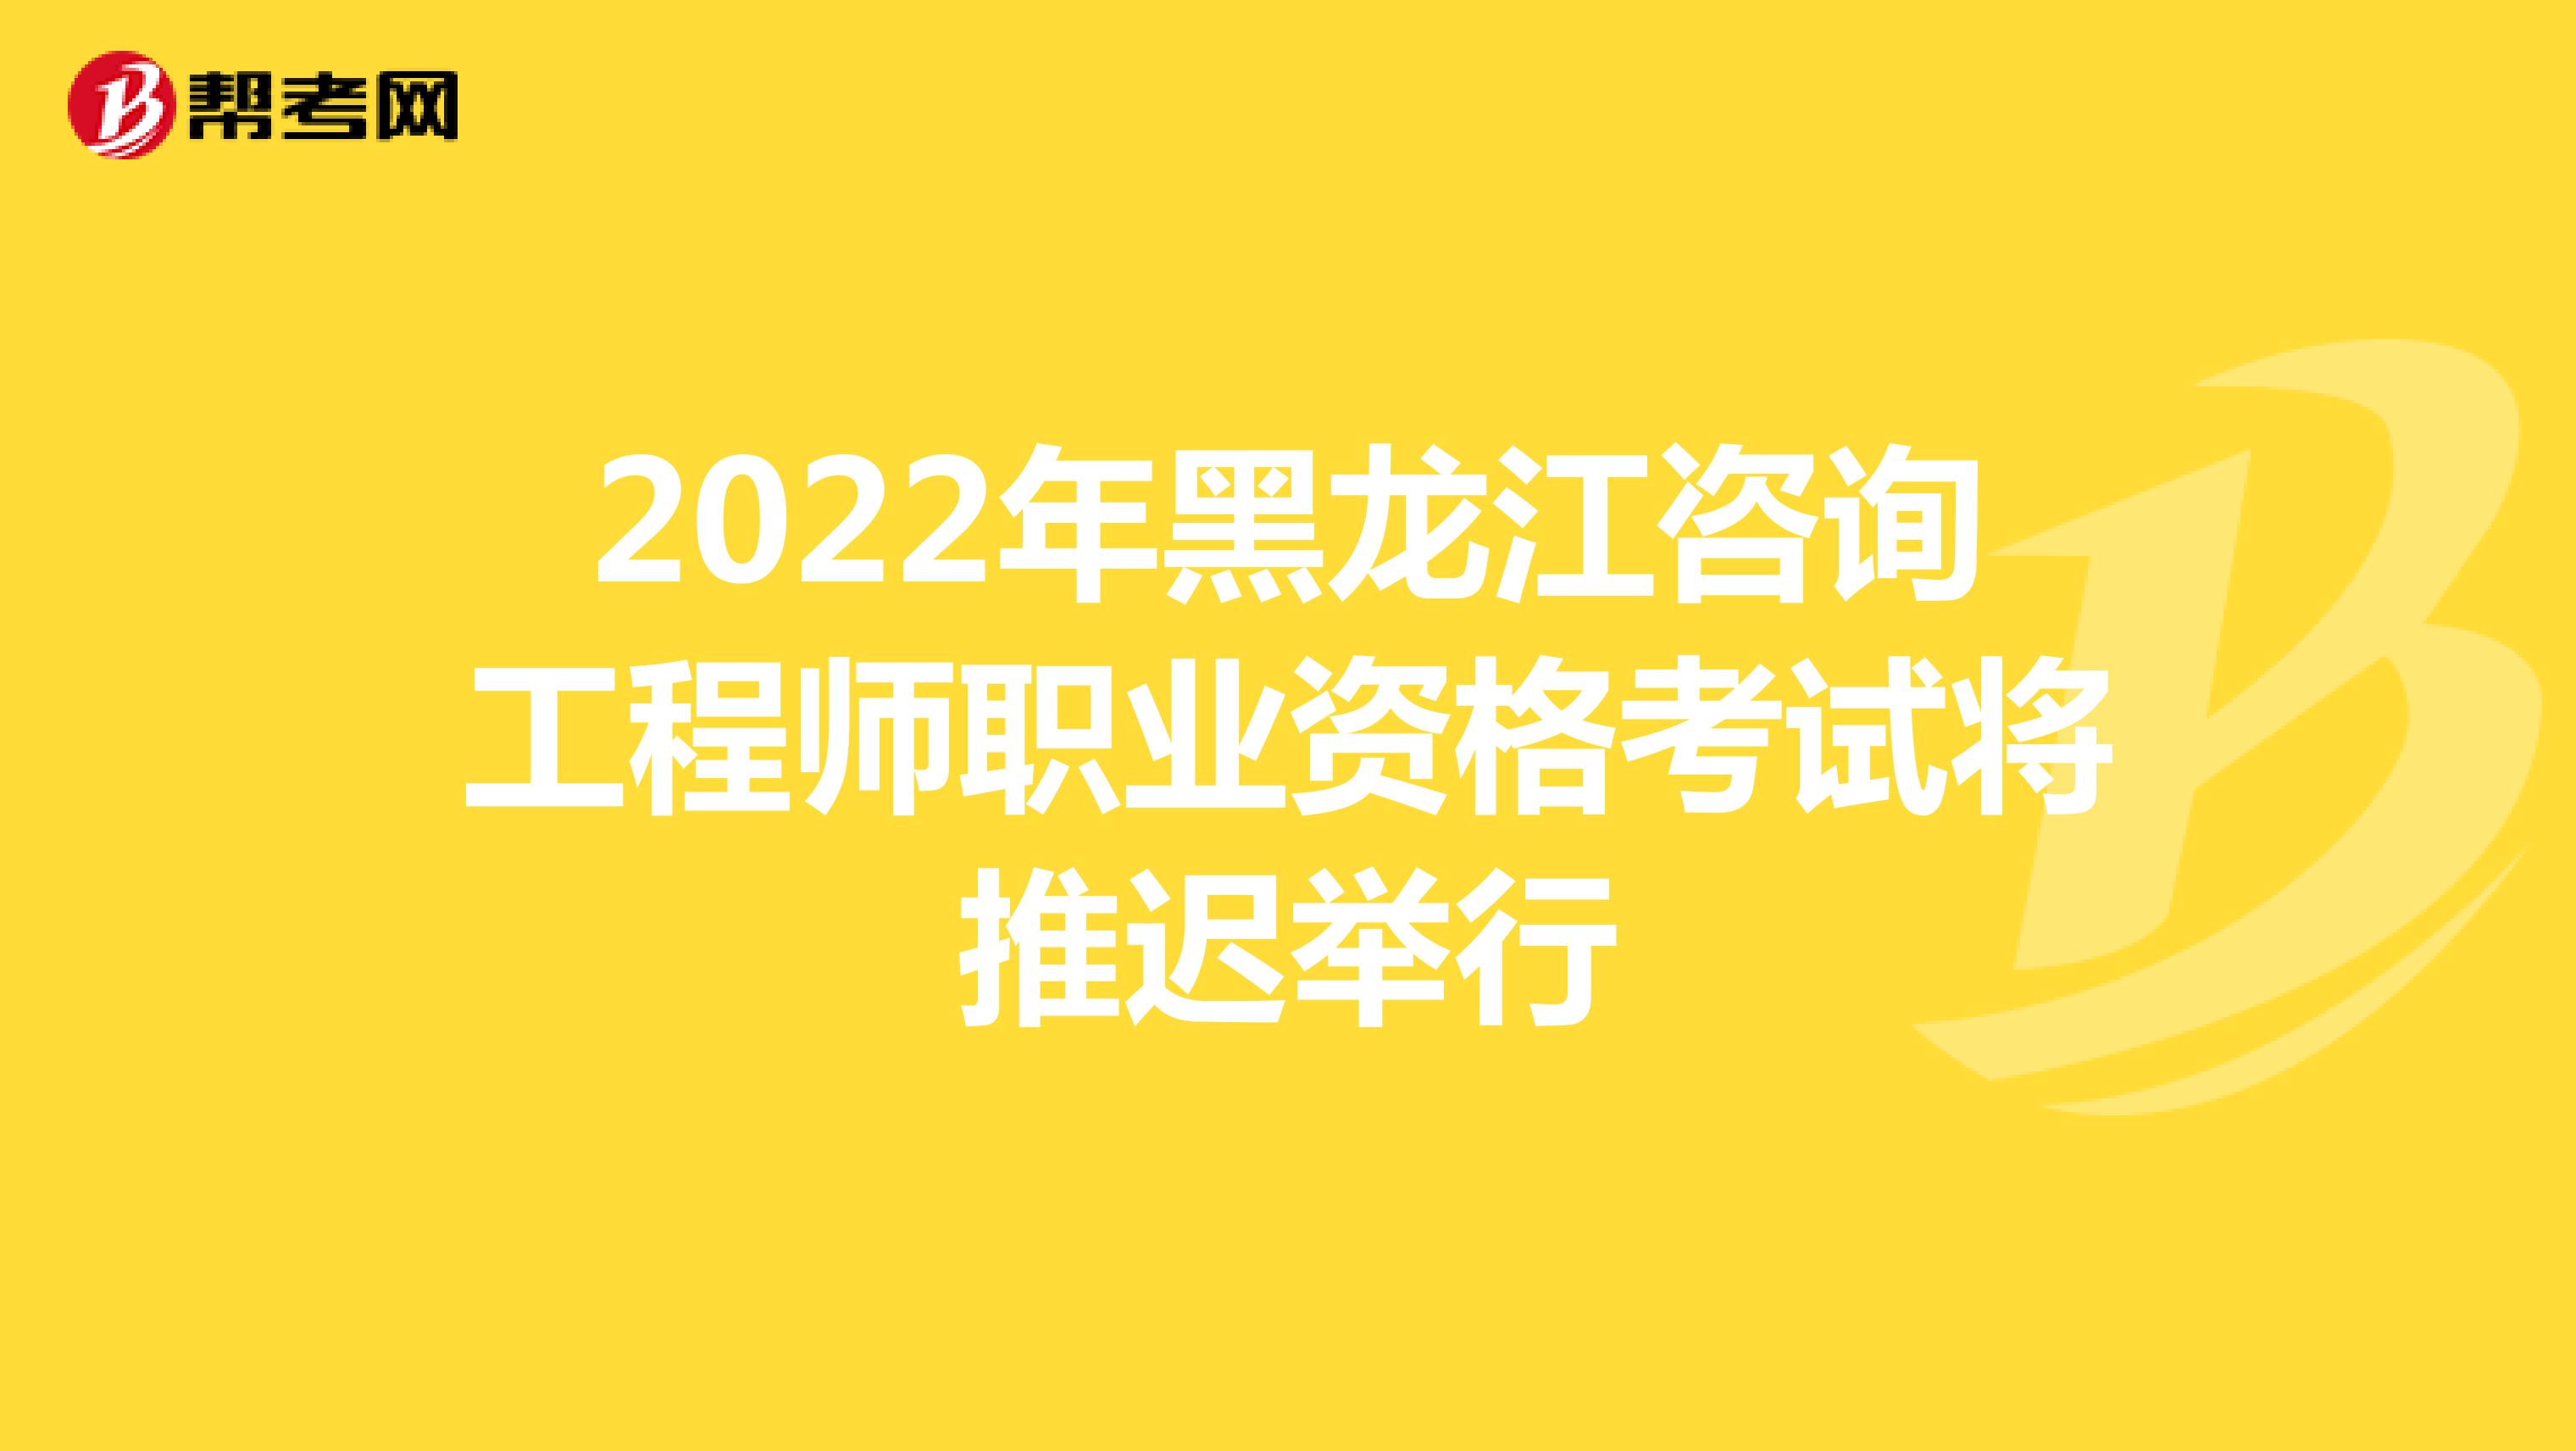 2022年黑龙江咨询工程师职业资格考试将推迟举行